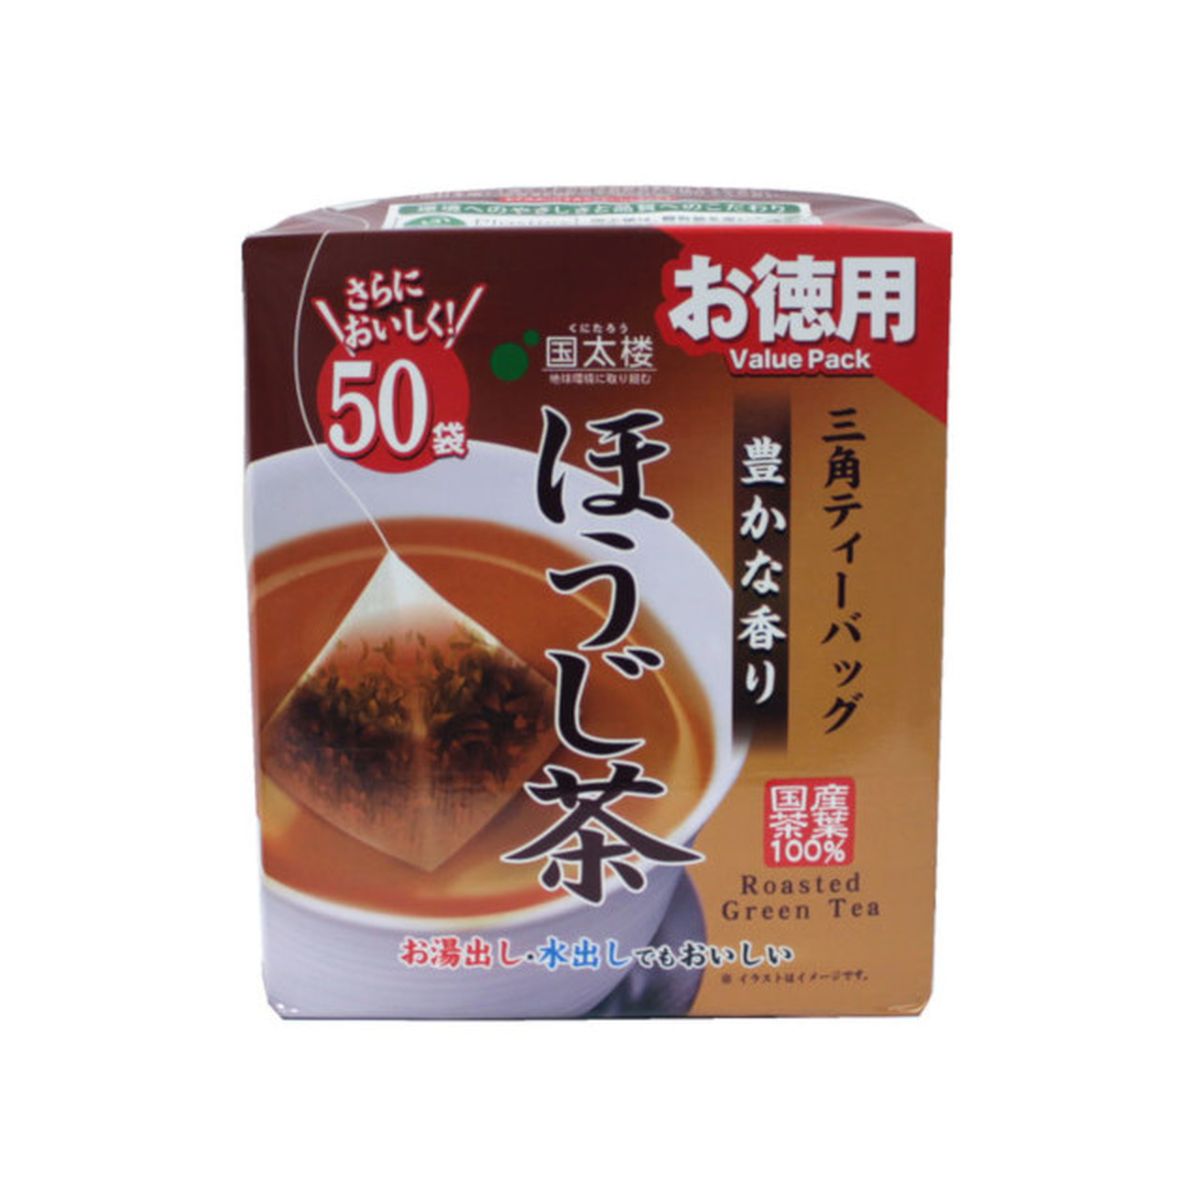 【6個入り】国太楼 お徳用 豊かな香りほうじ茶 三角ティーパック 2g